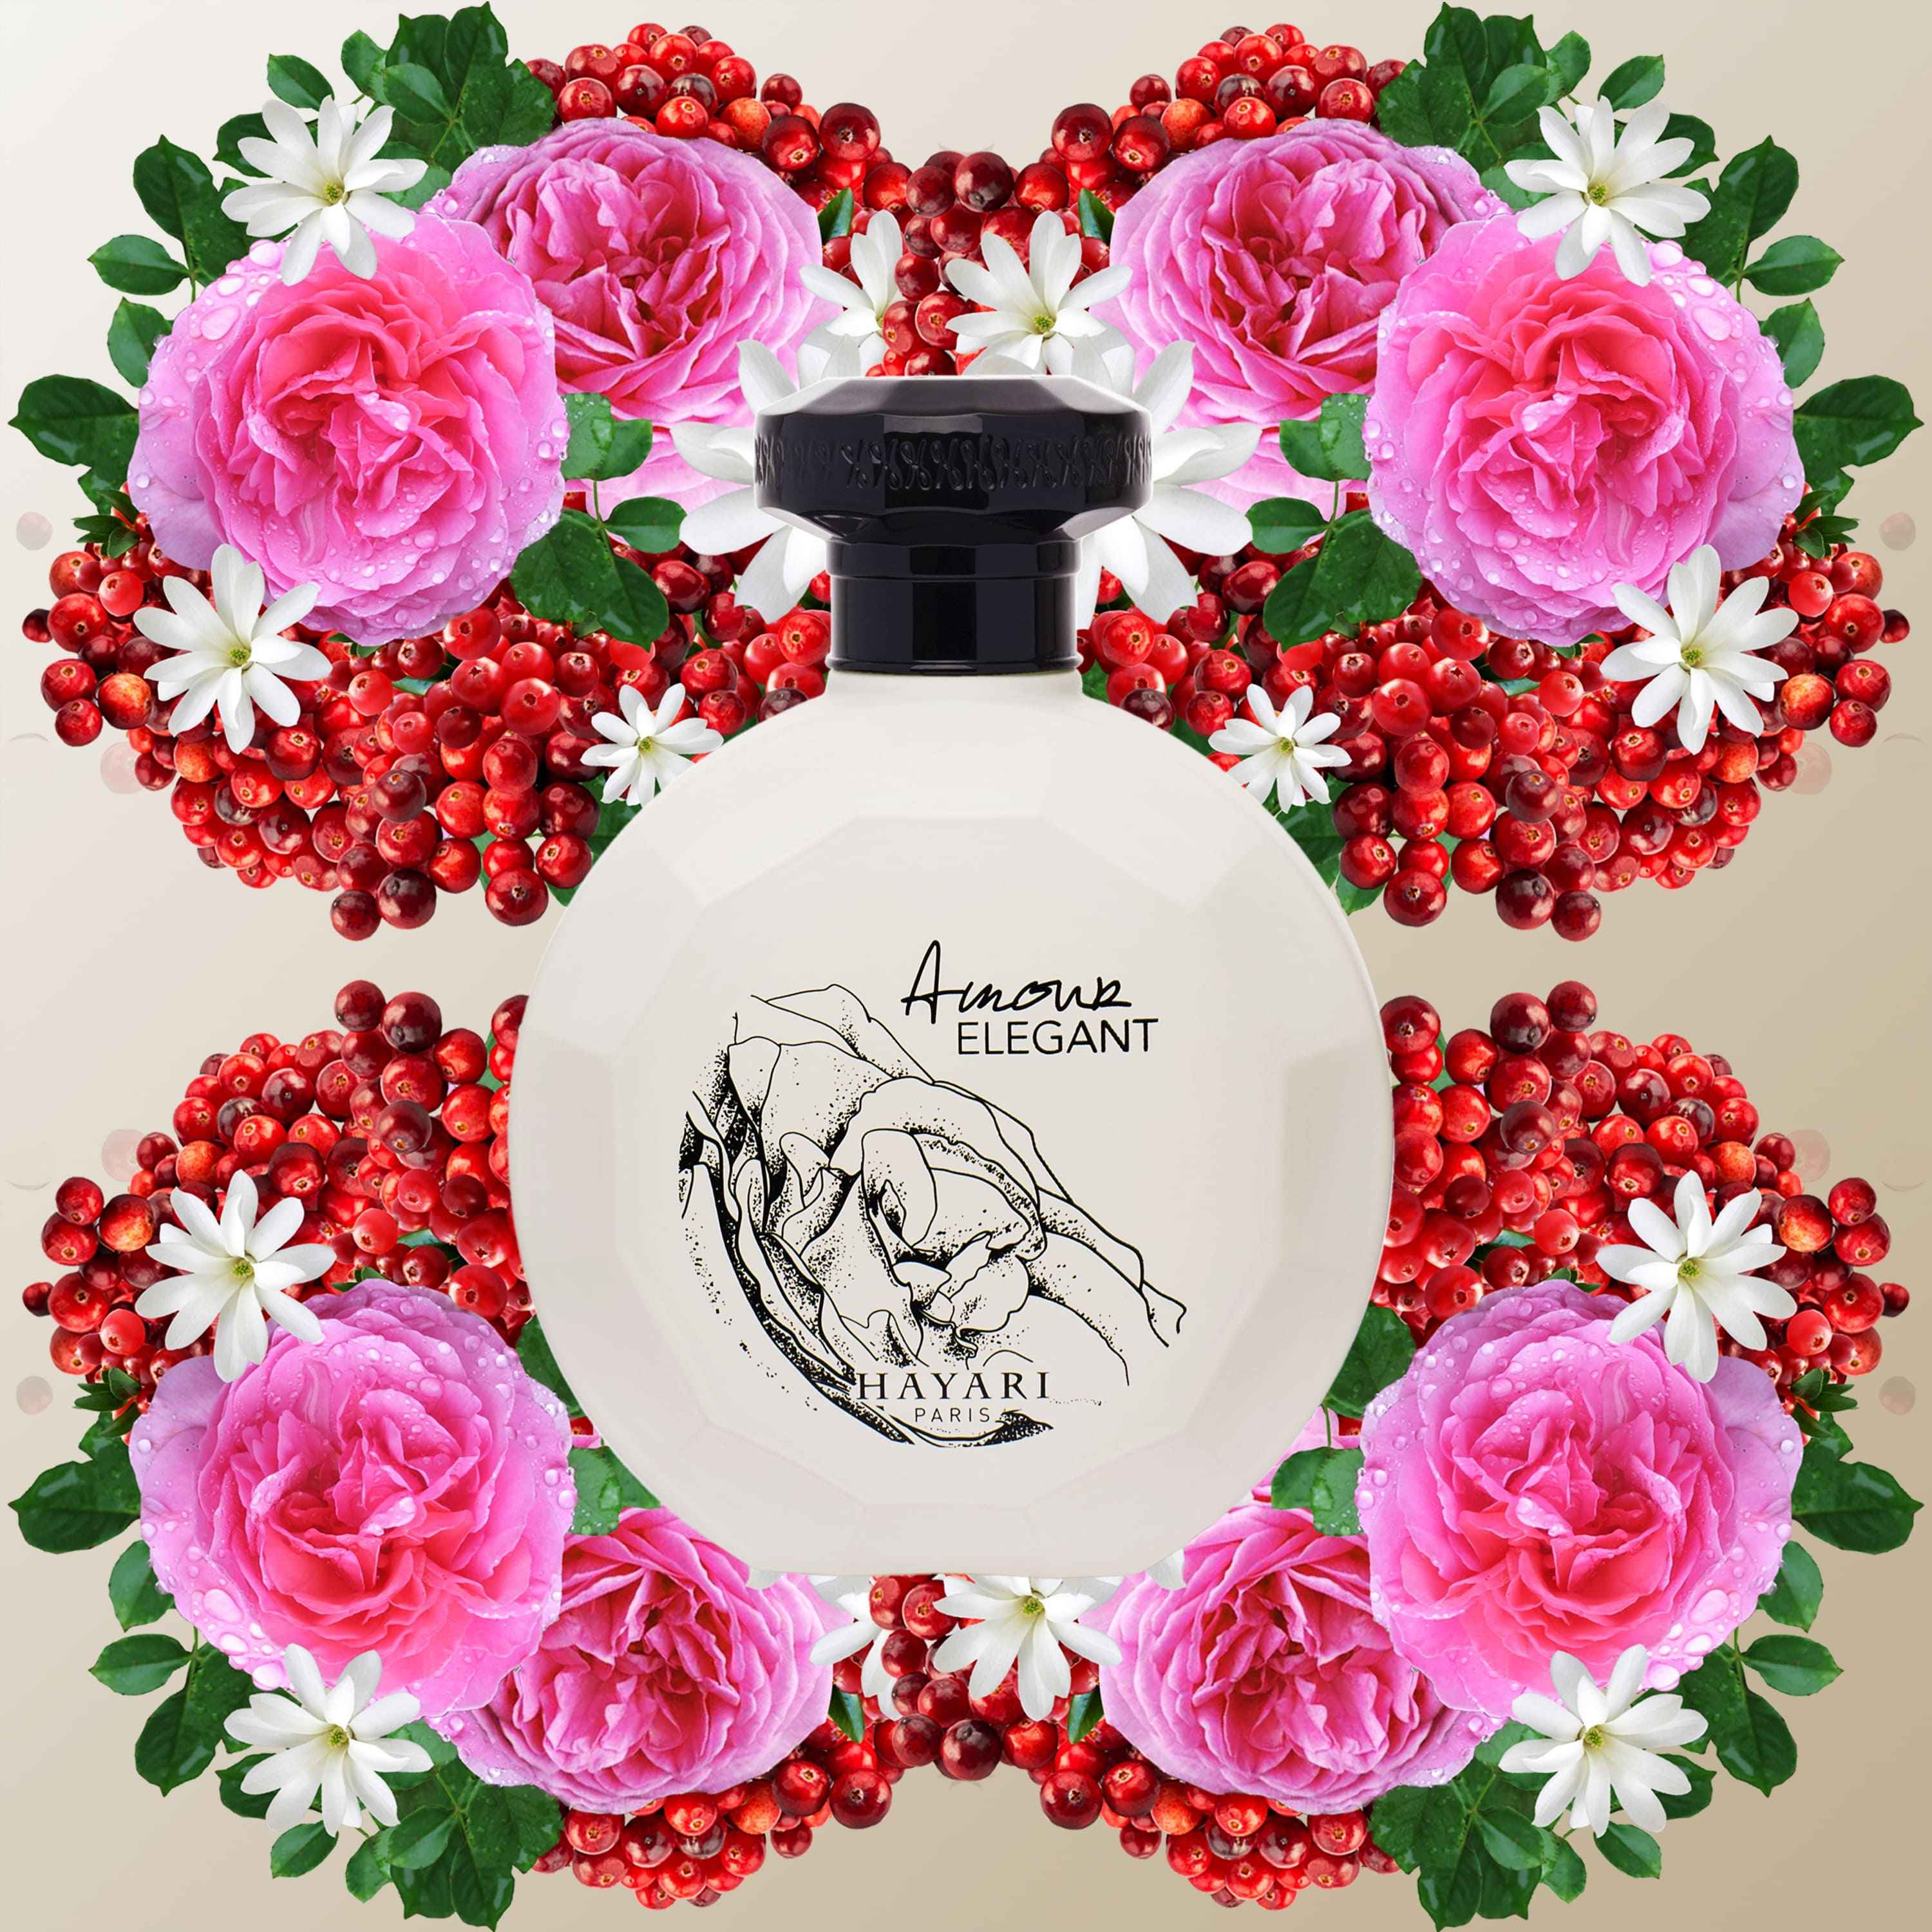 Amorette Parfums Paris - Charme Éternel is a luxurious feminine